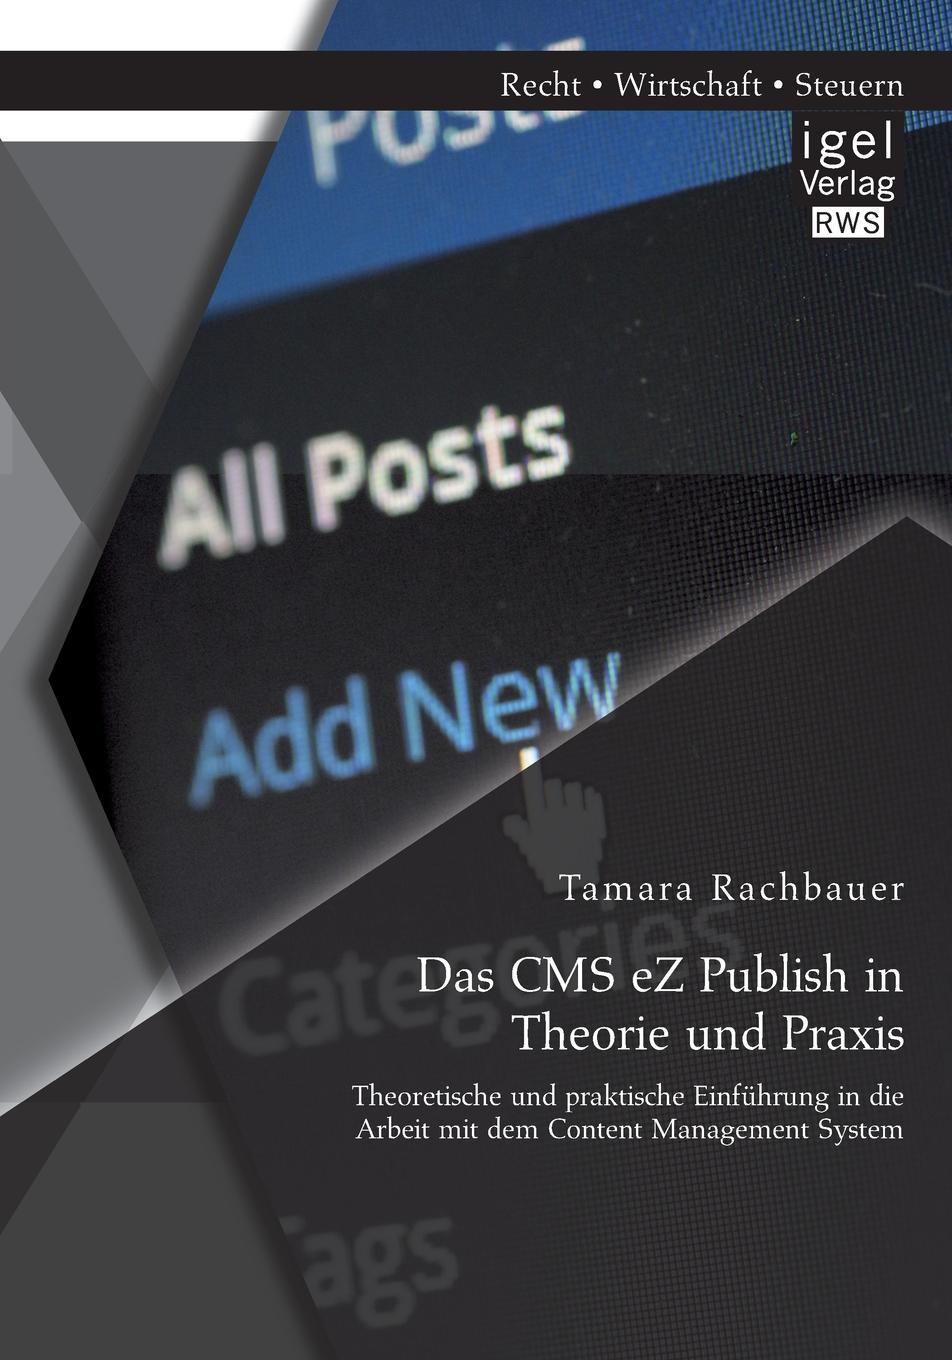 Das CMS eZ Publish in Theorie und Praxis. Theoretische und praktische Einfuhrung in die Arbeit mit dem Content Management System